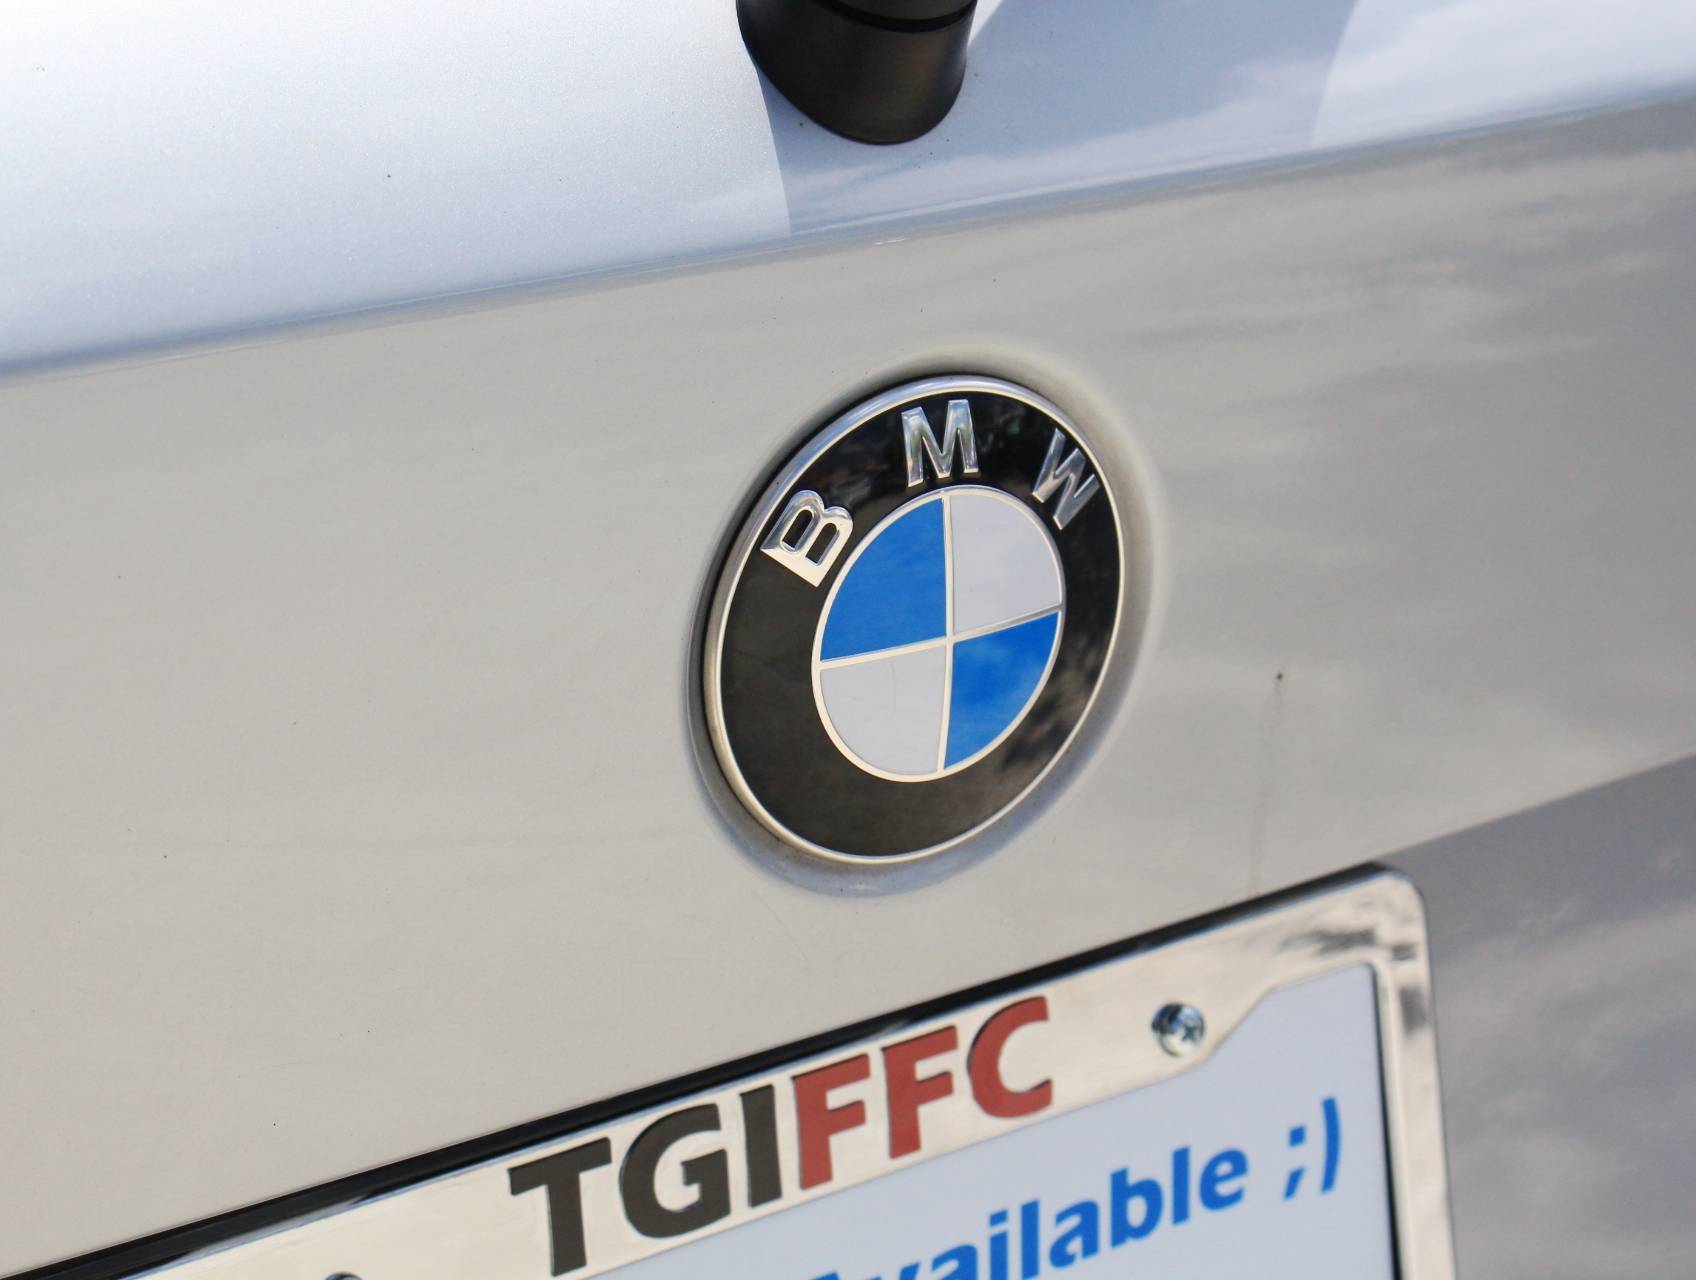 Florida Fine Cars - Used BMW X1 2014 MIAMI XDRIVE28I SPORT